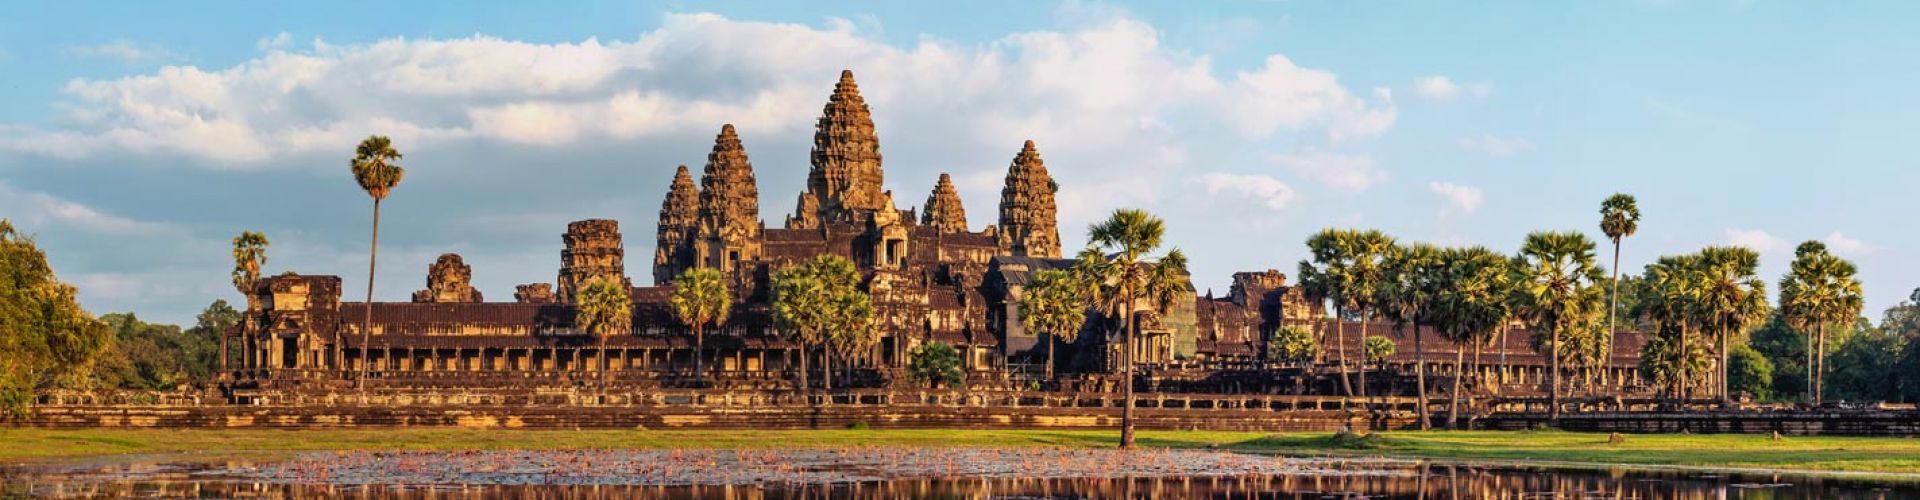 Các điểm du lịch tại Siem Reap